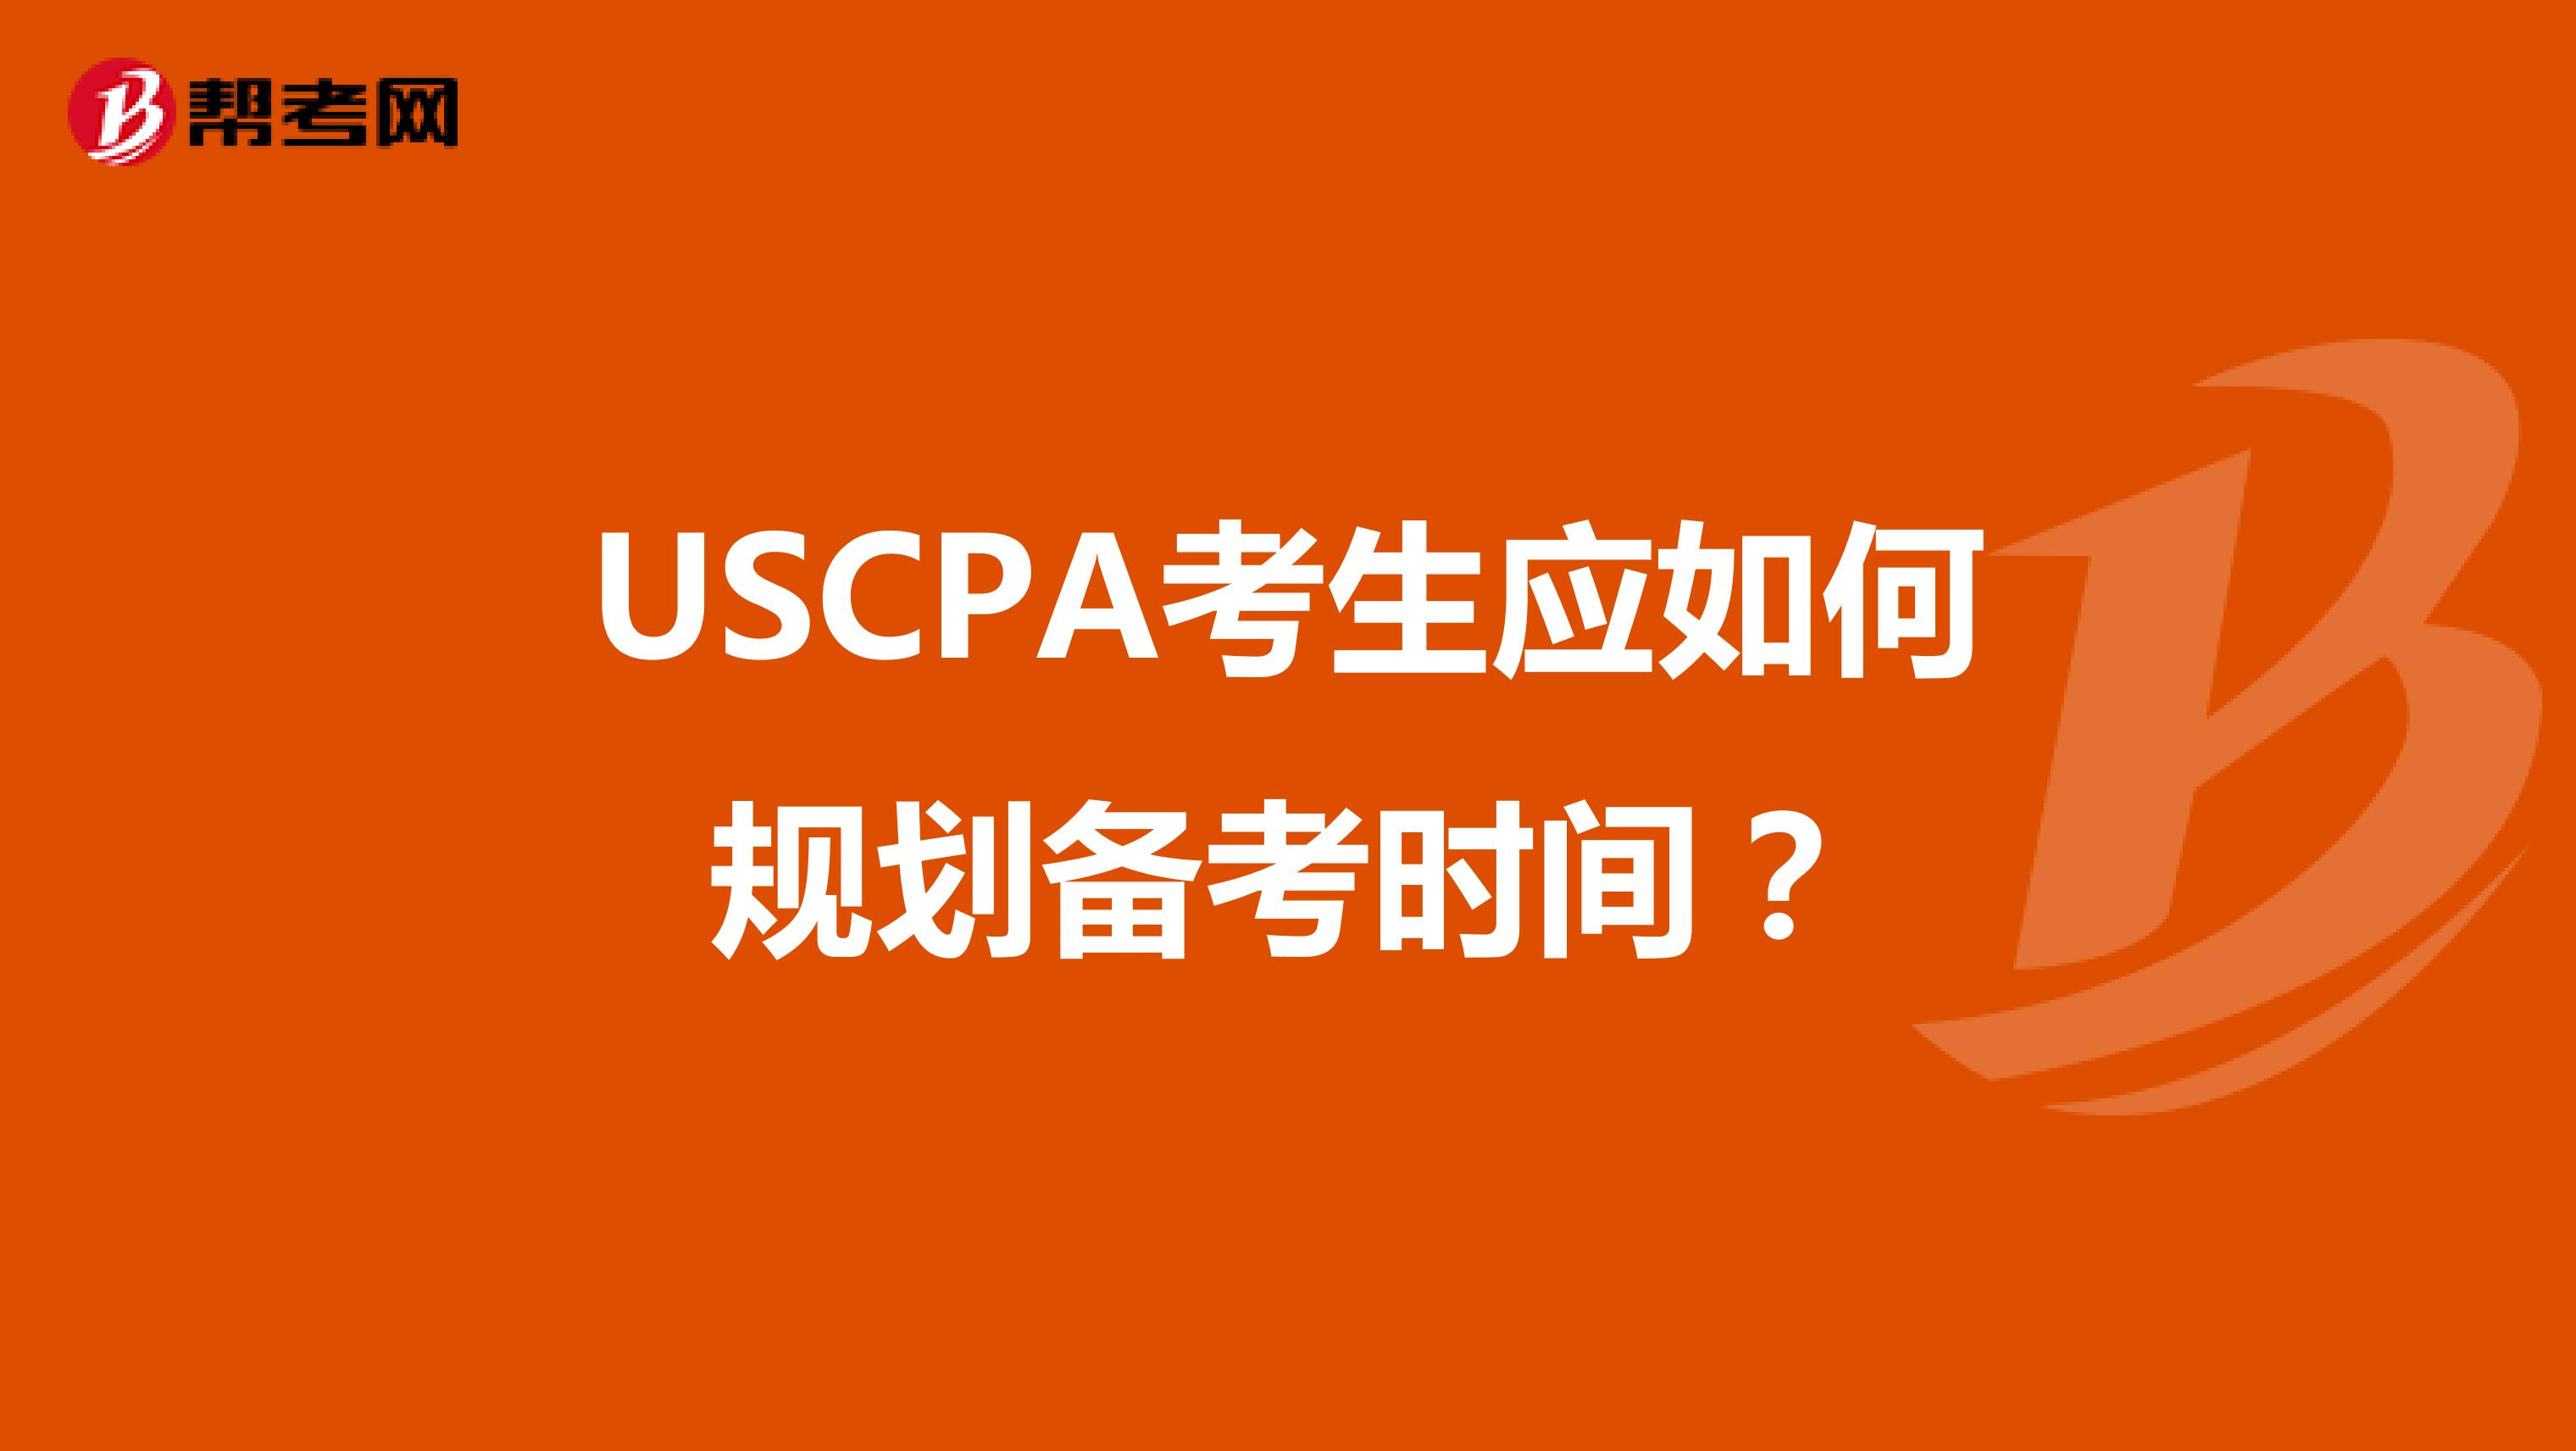 USCPA考生应如何规划备考时间？